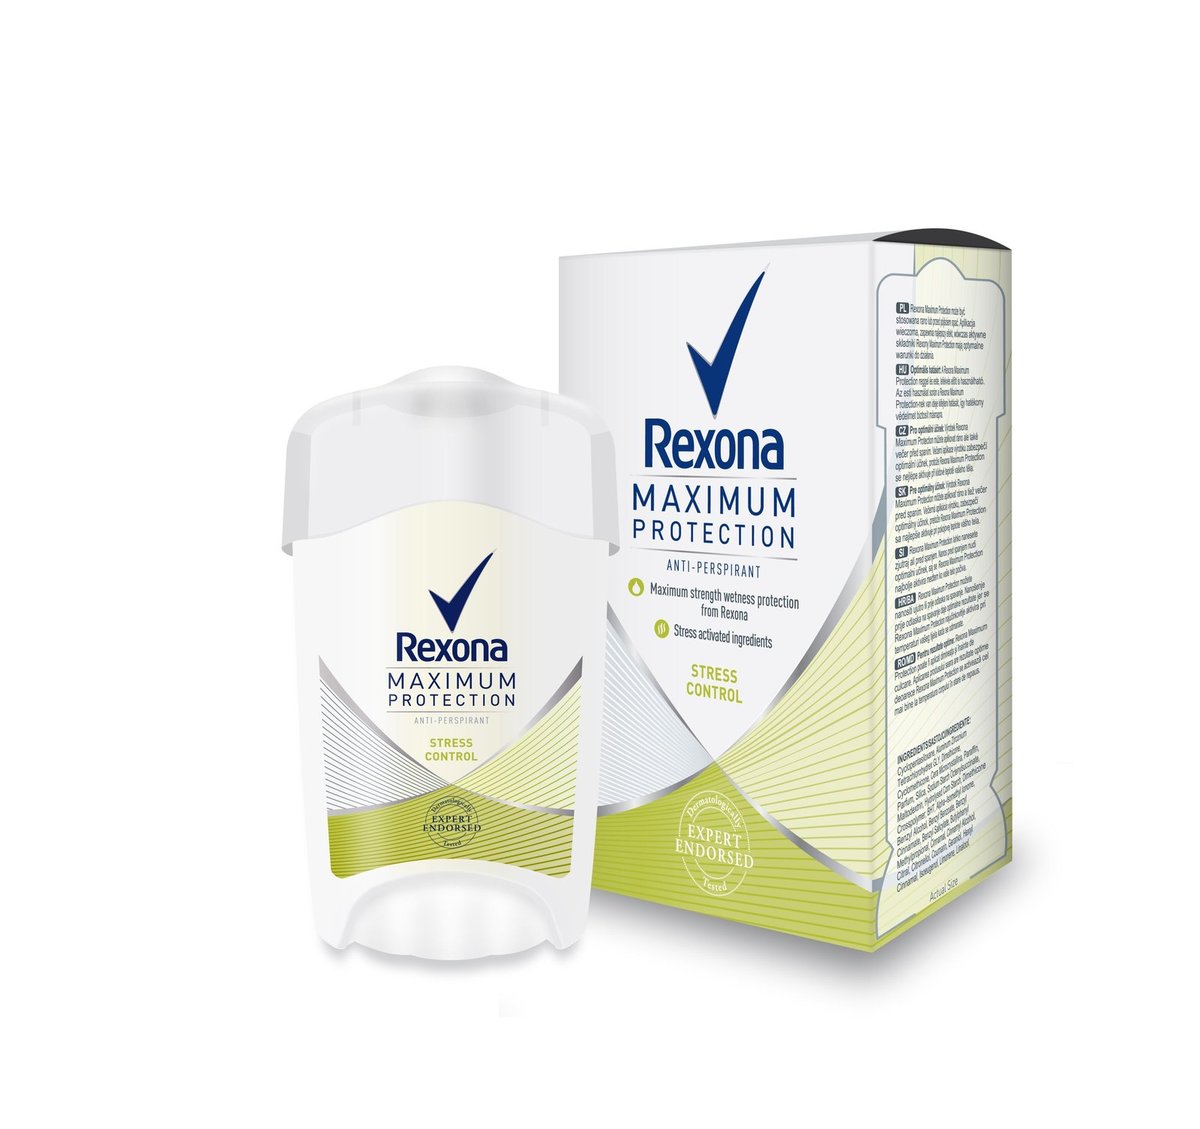 Spolehlivý antiperspirant ochrání před nadměrným pocením i skvrnami na letních šatech. Rexona Maximum Protection Stress Control, 160 Kč.